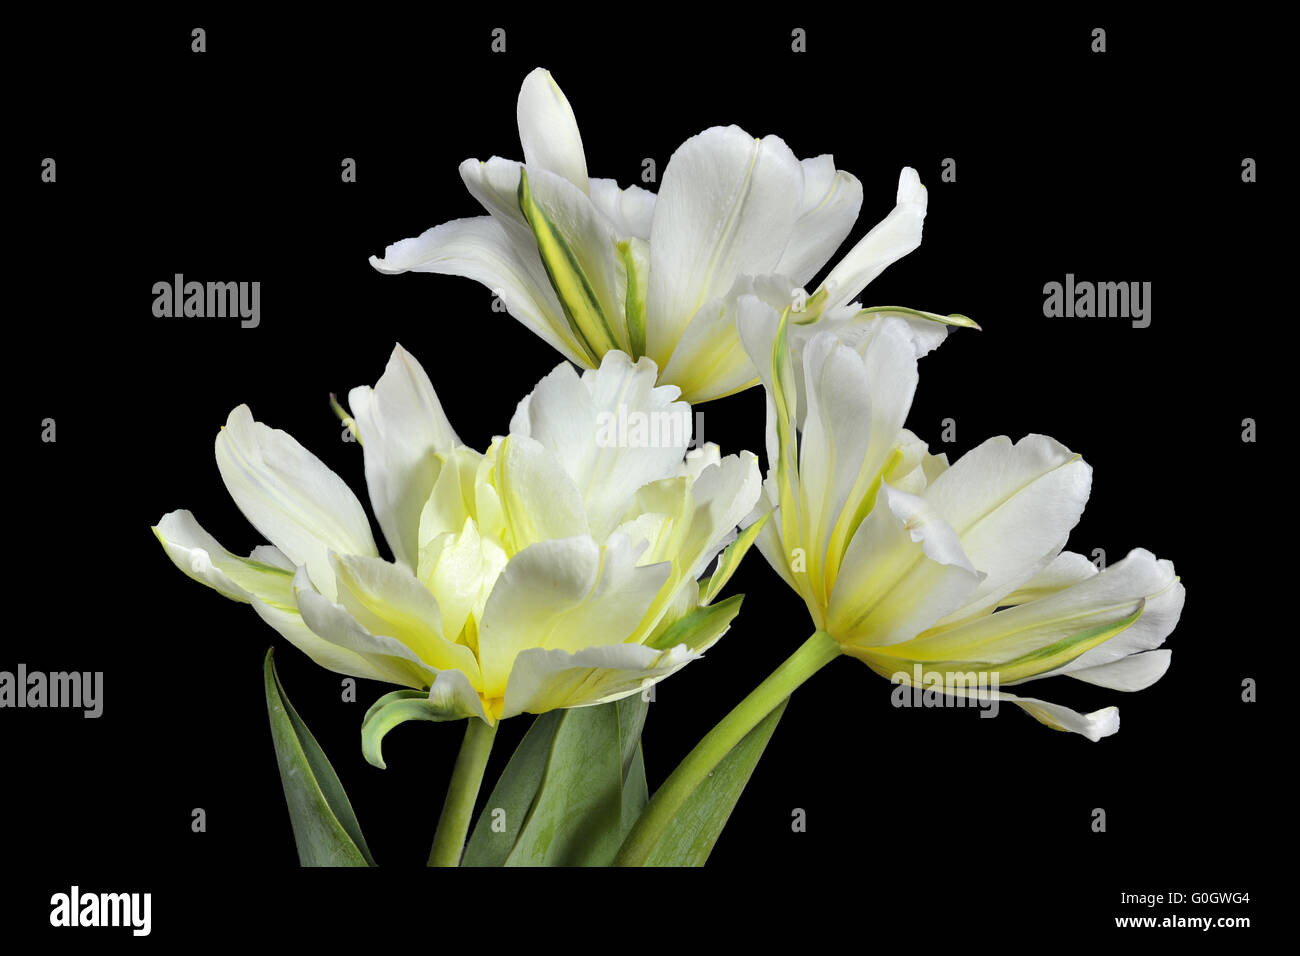 Three white and yellow tulips Stock Photo